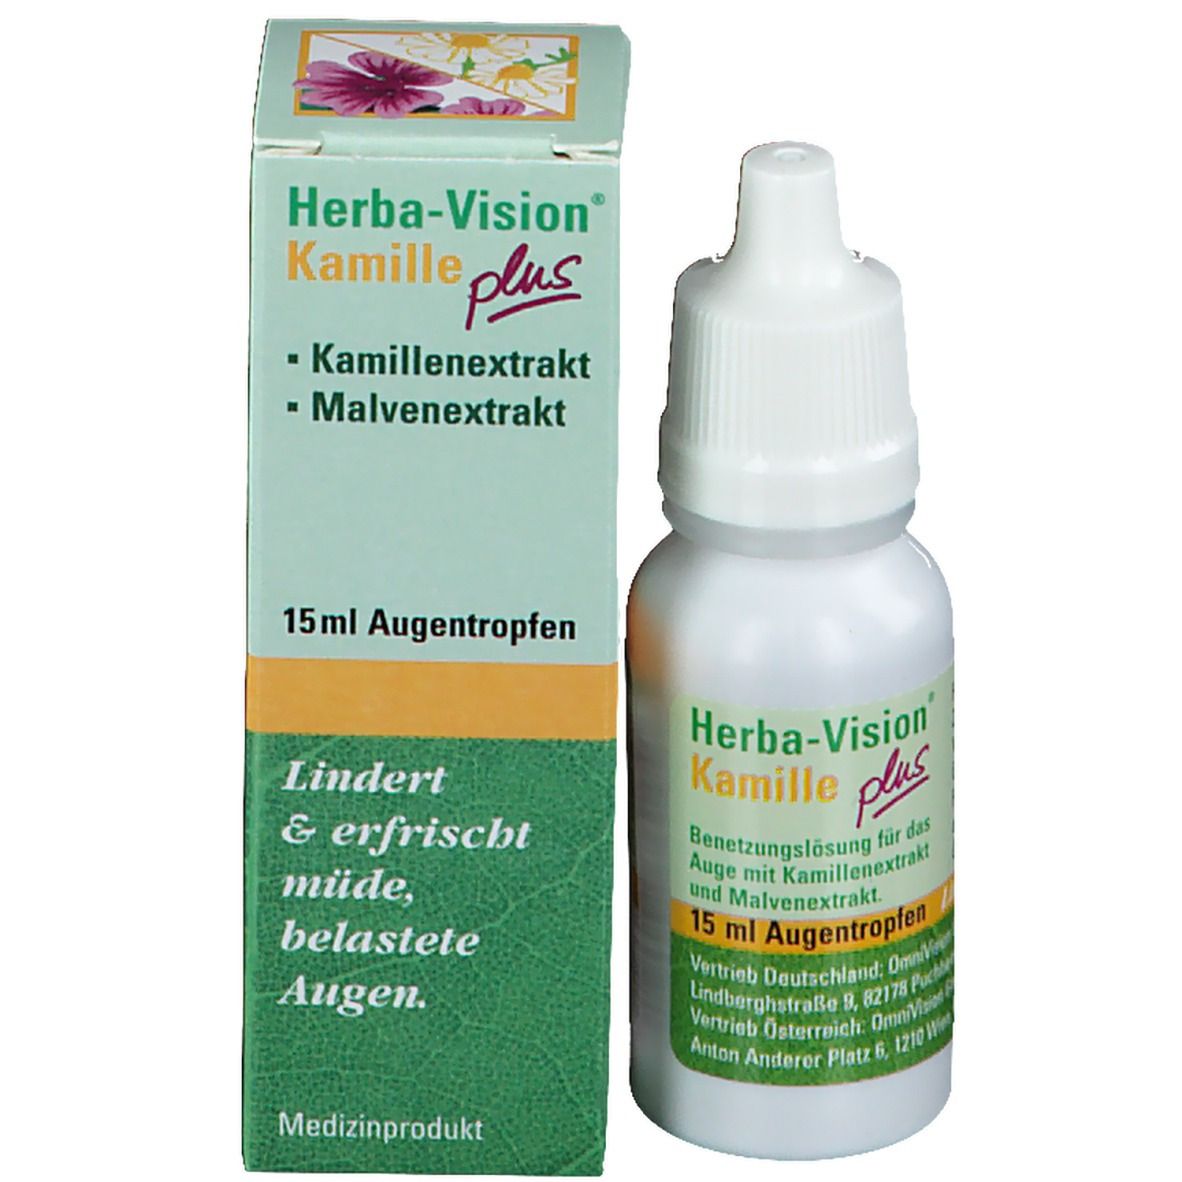 Herba-Vision® Kamille plus